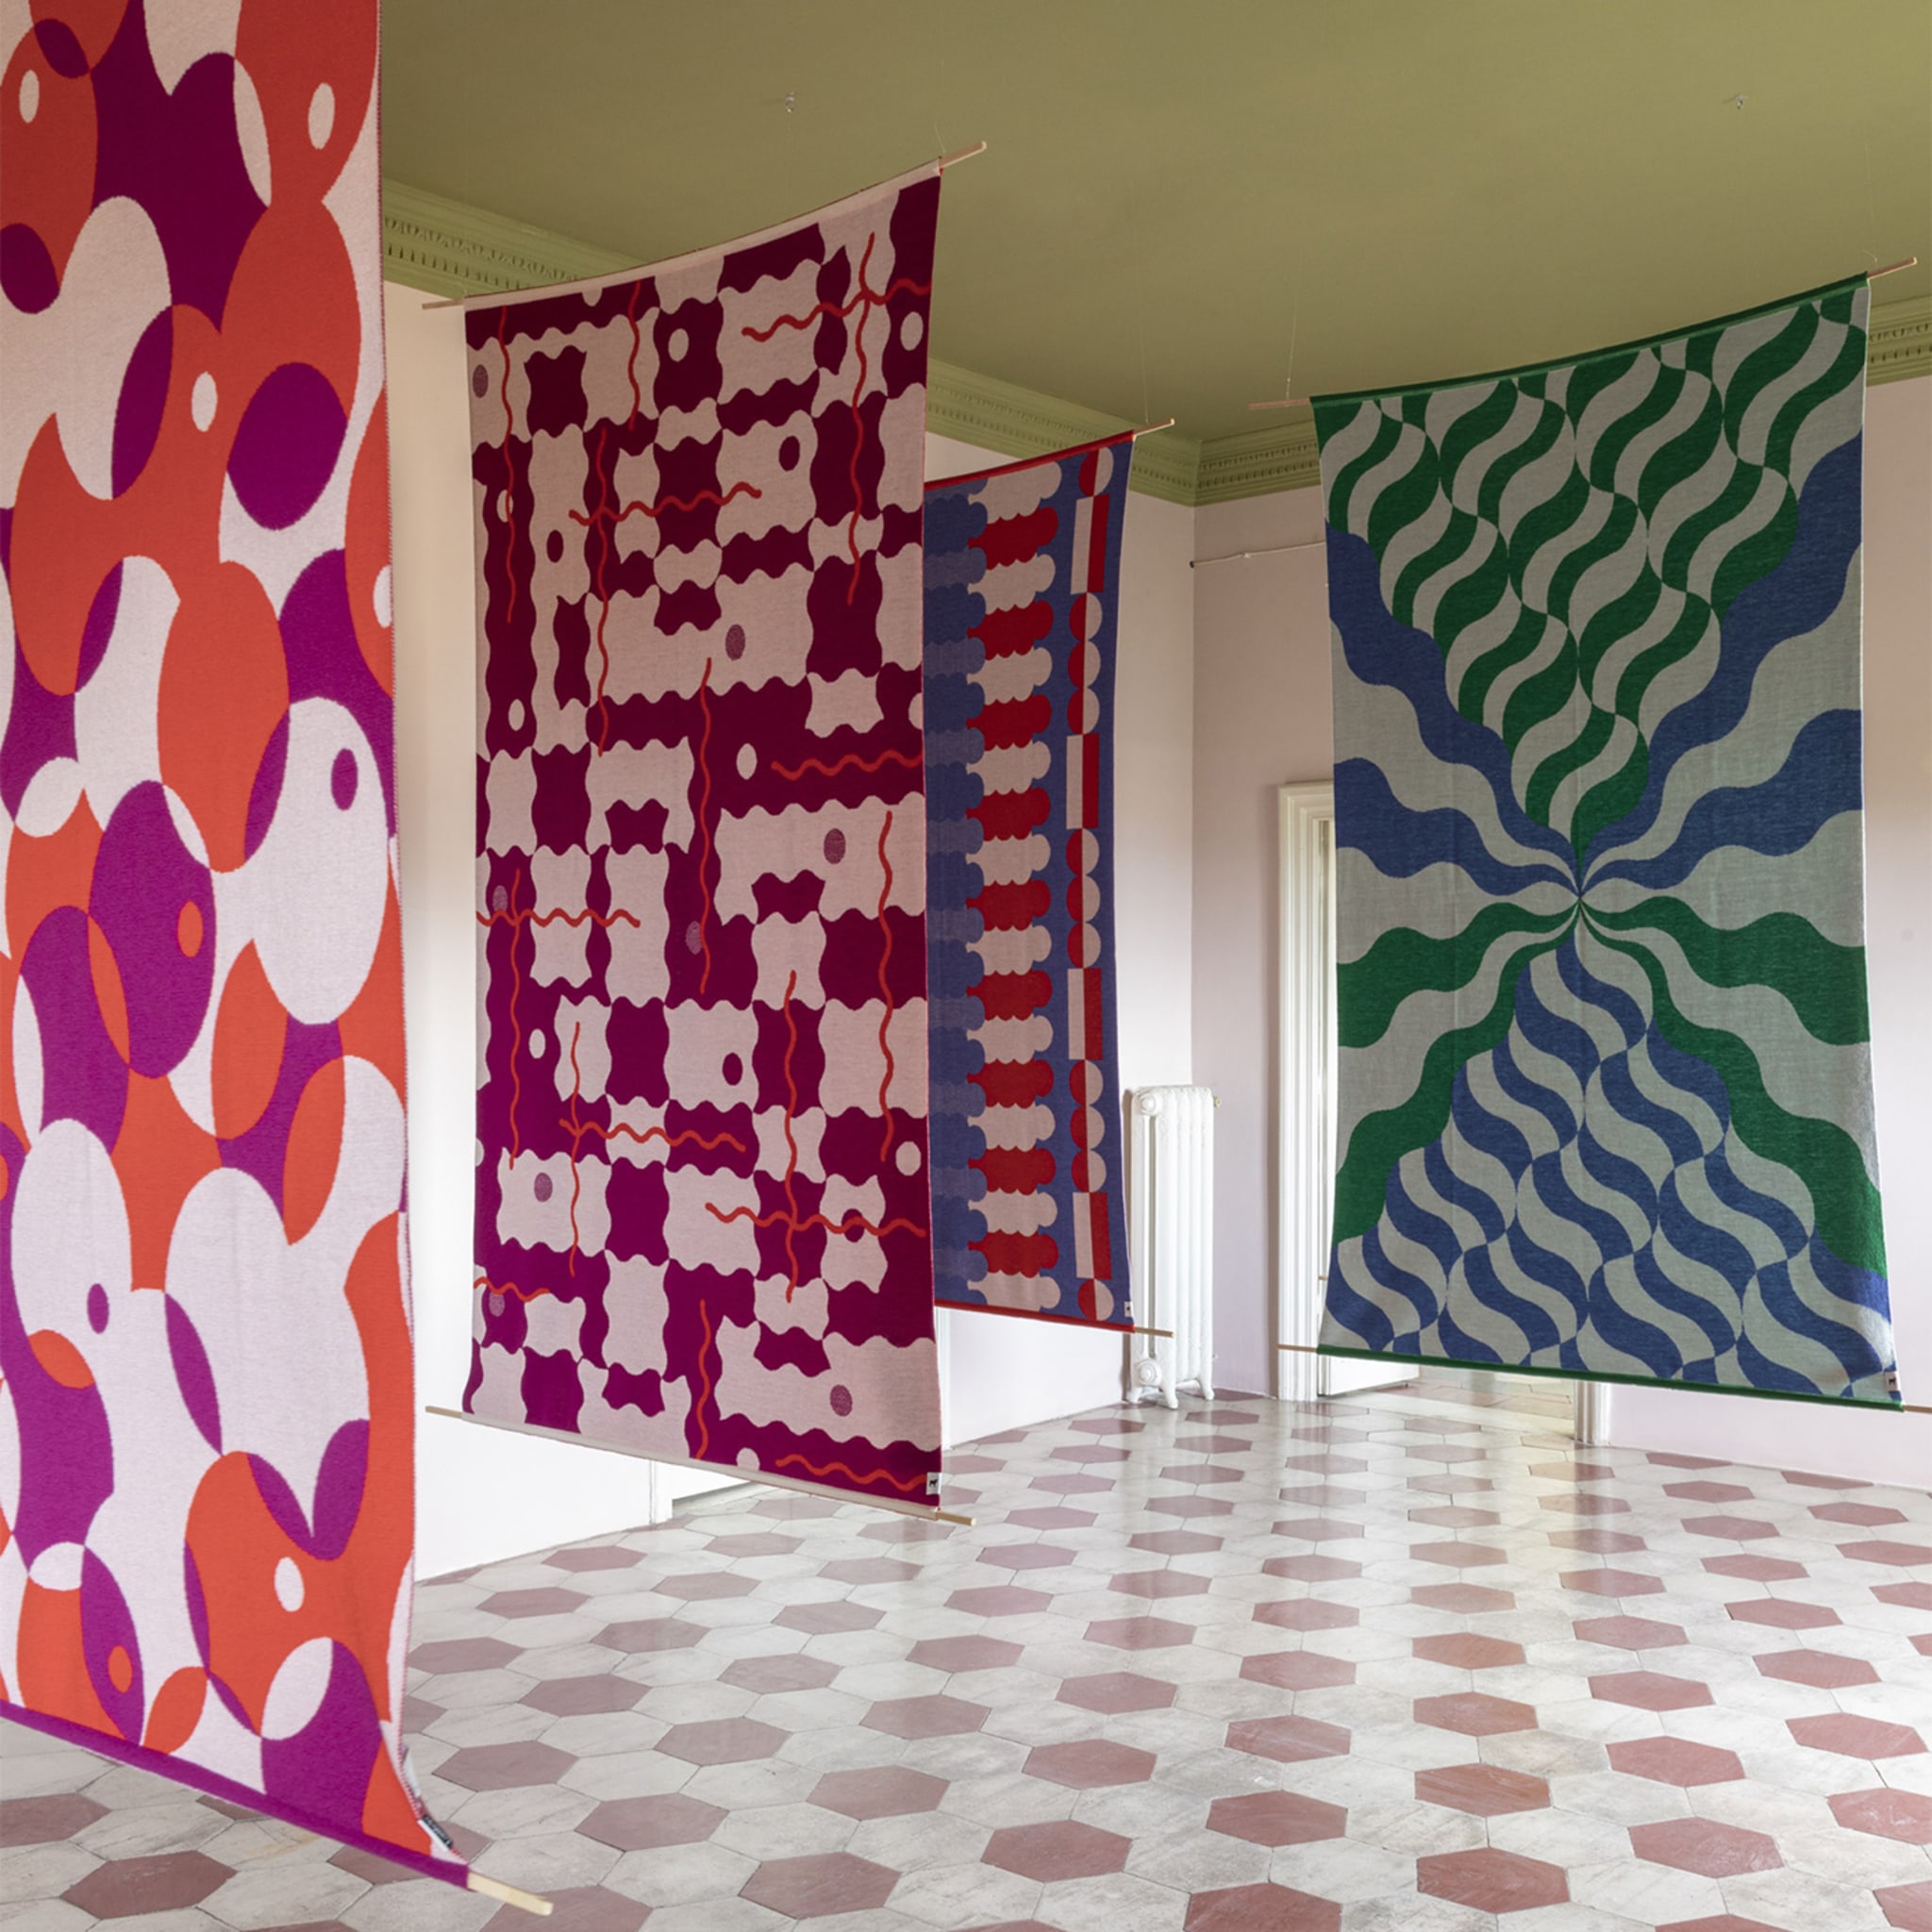 Trip 4 Polychrome Blanket/Tapestry by Serena Confalonieri - Alternative view 2